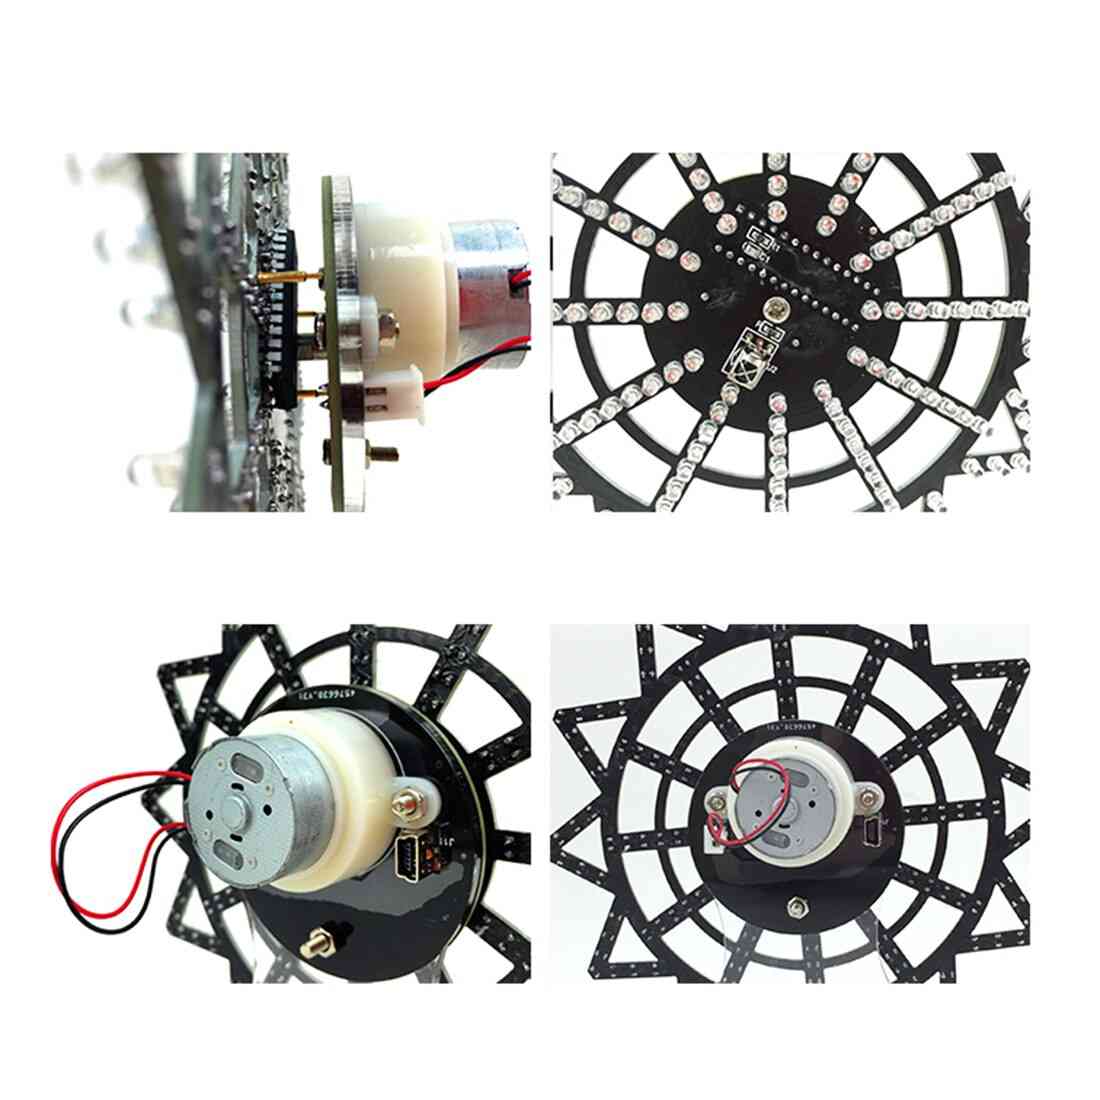 DIY bunte LED automatisch rotierende Riesenrad Kit elektronische Komponenten -